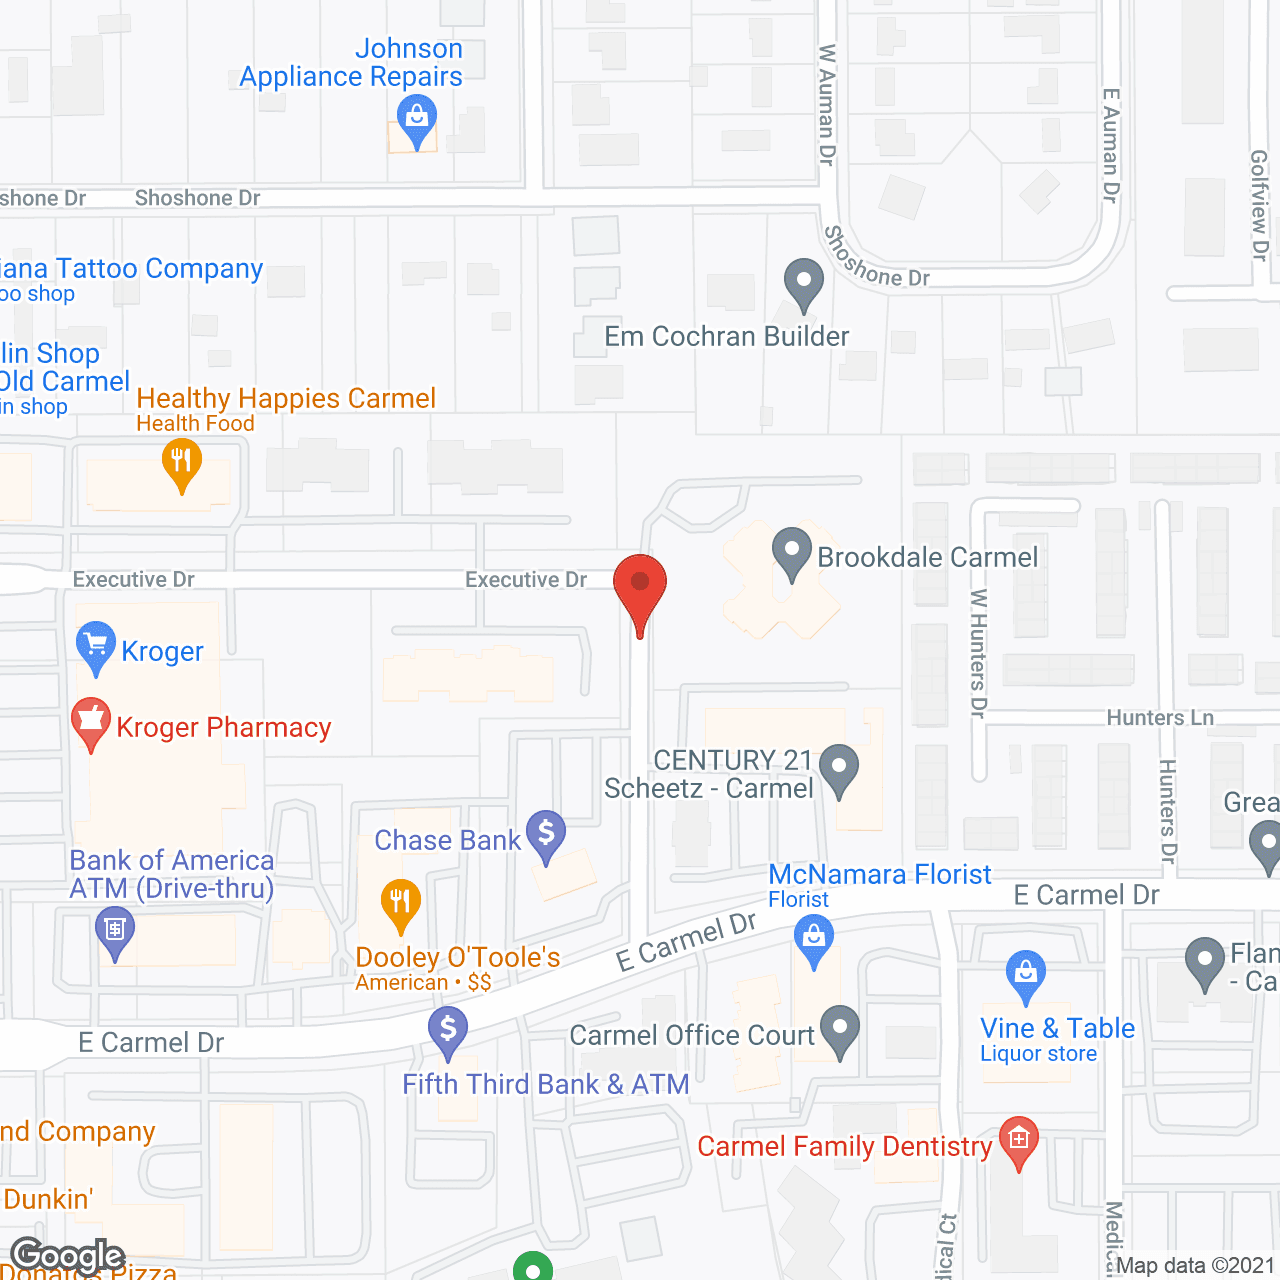 Brookdale Carmel in google map